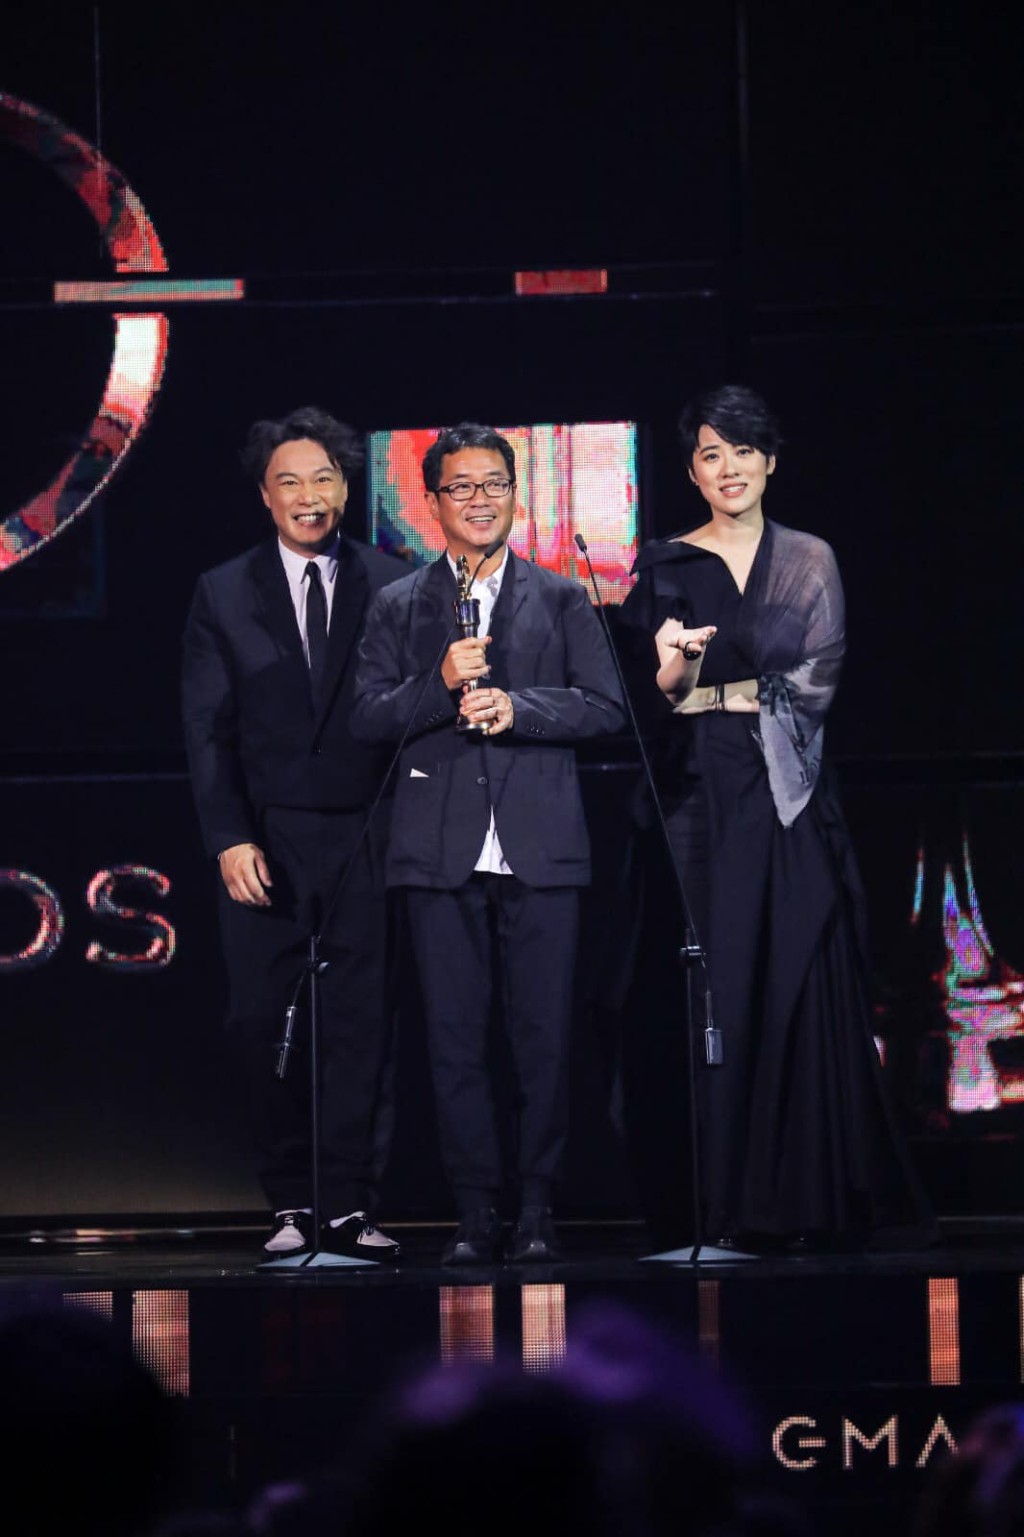 陈奕迅与岑宁儿代替王双骏领第30届《金曲奖》的「最佳专辑制作人」奖。